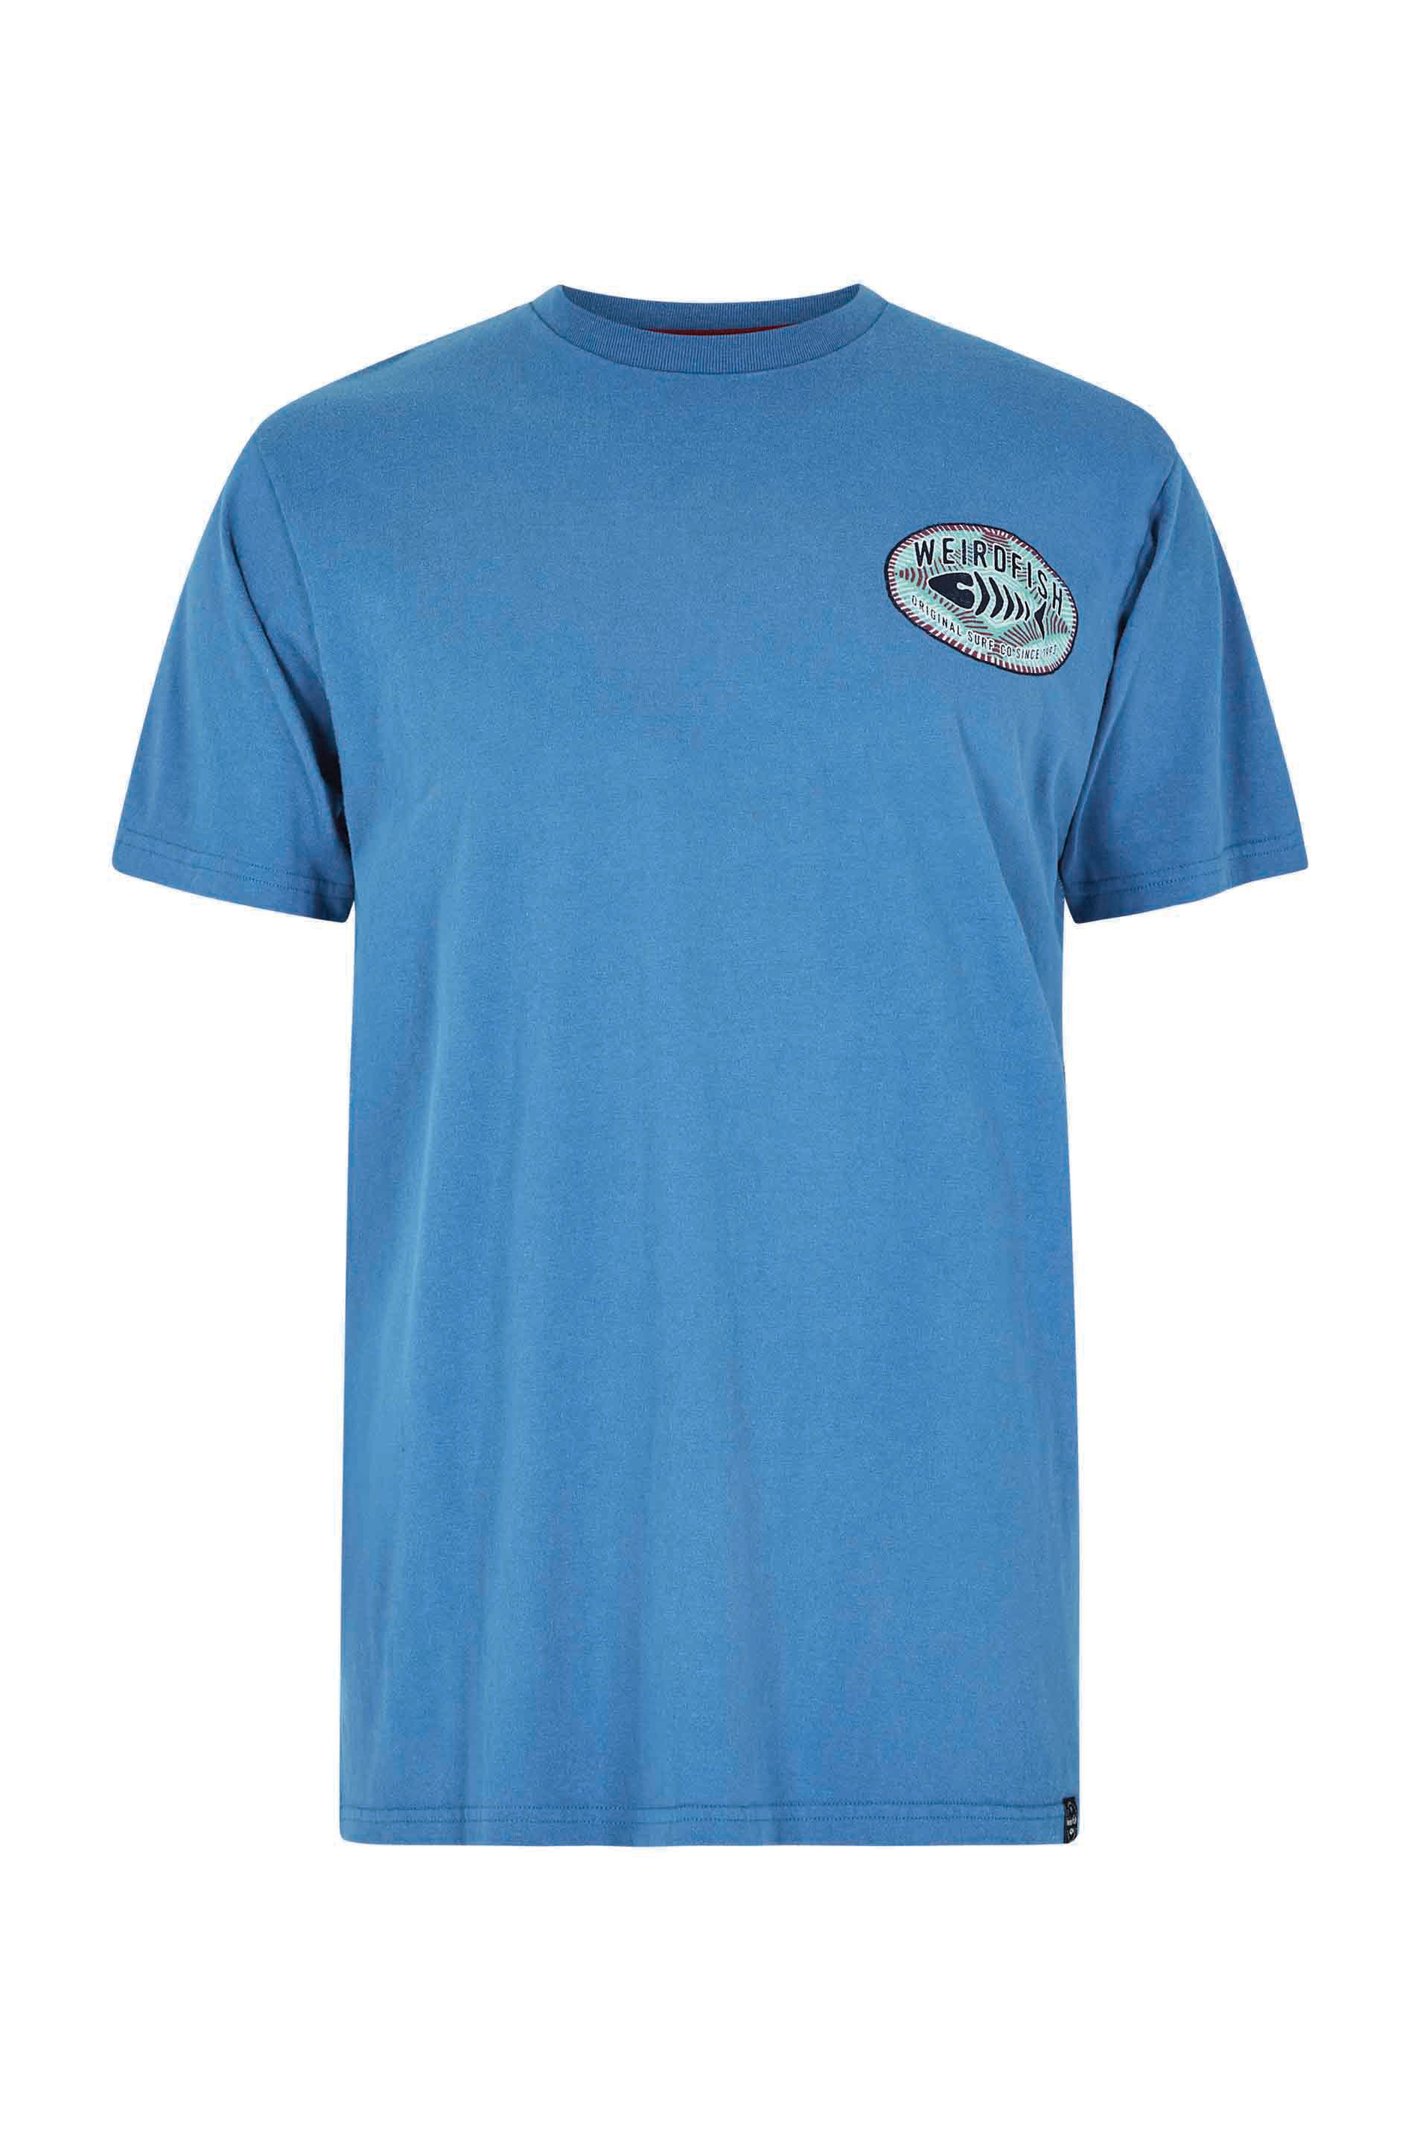 Weird Fish Original Surf Graphic T-Shirt Blue Sapphire Size 5XL